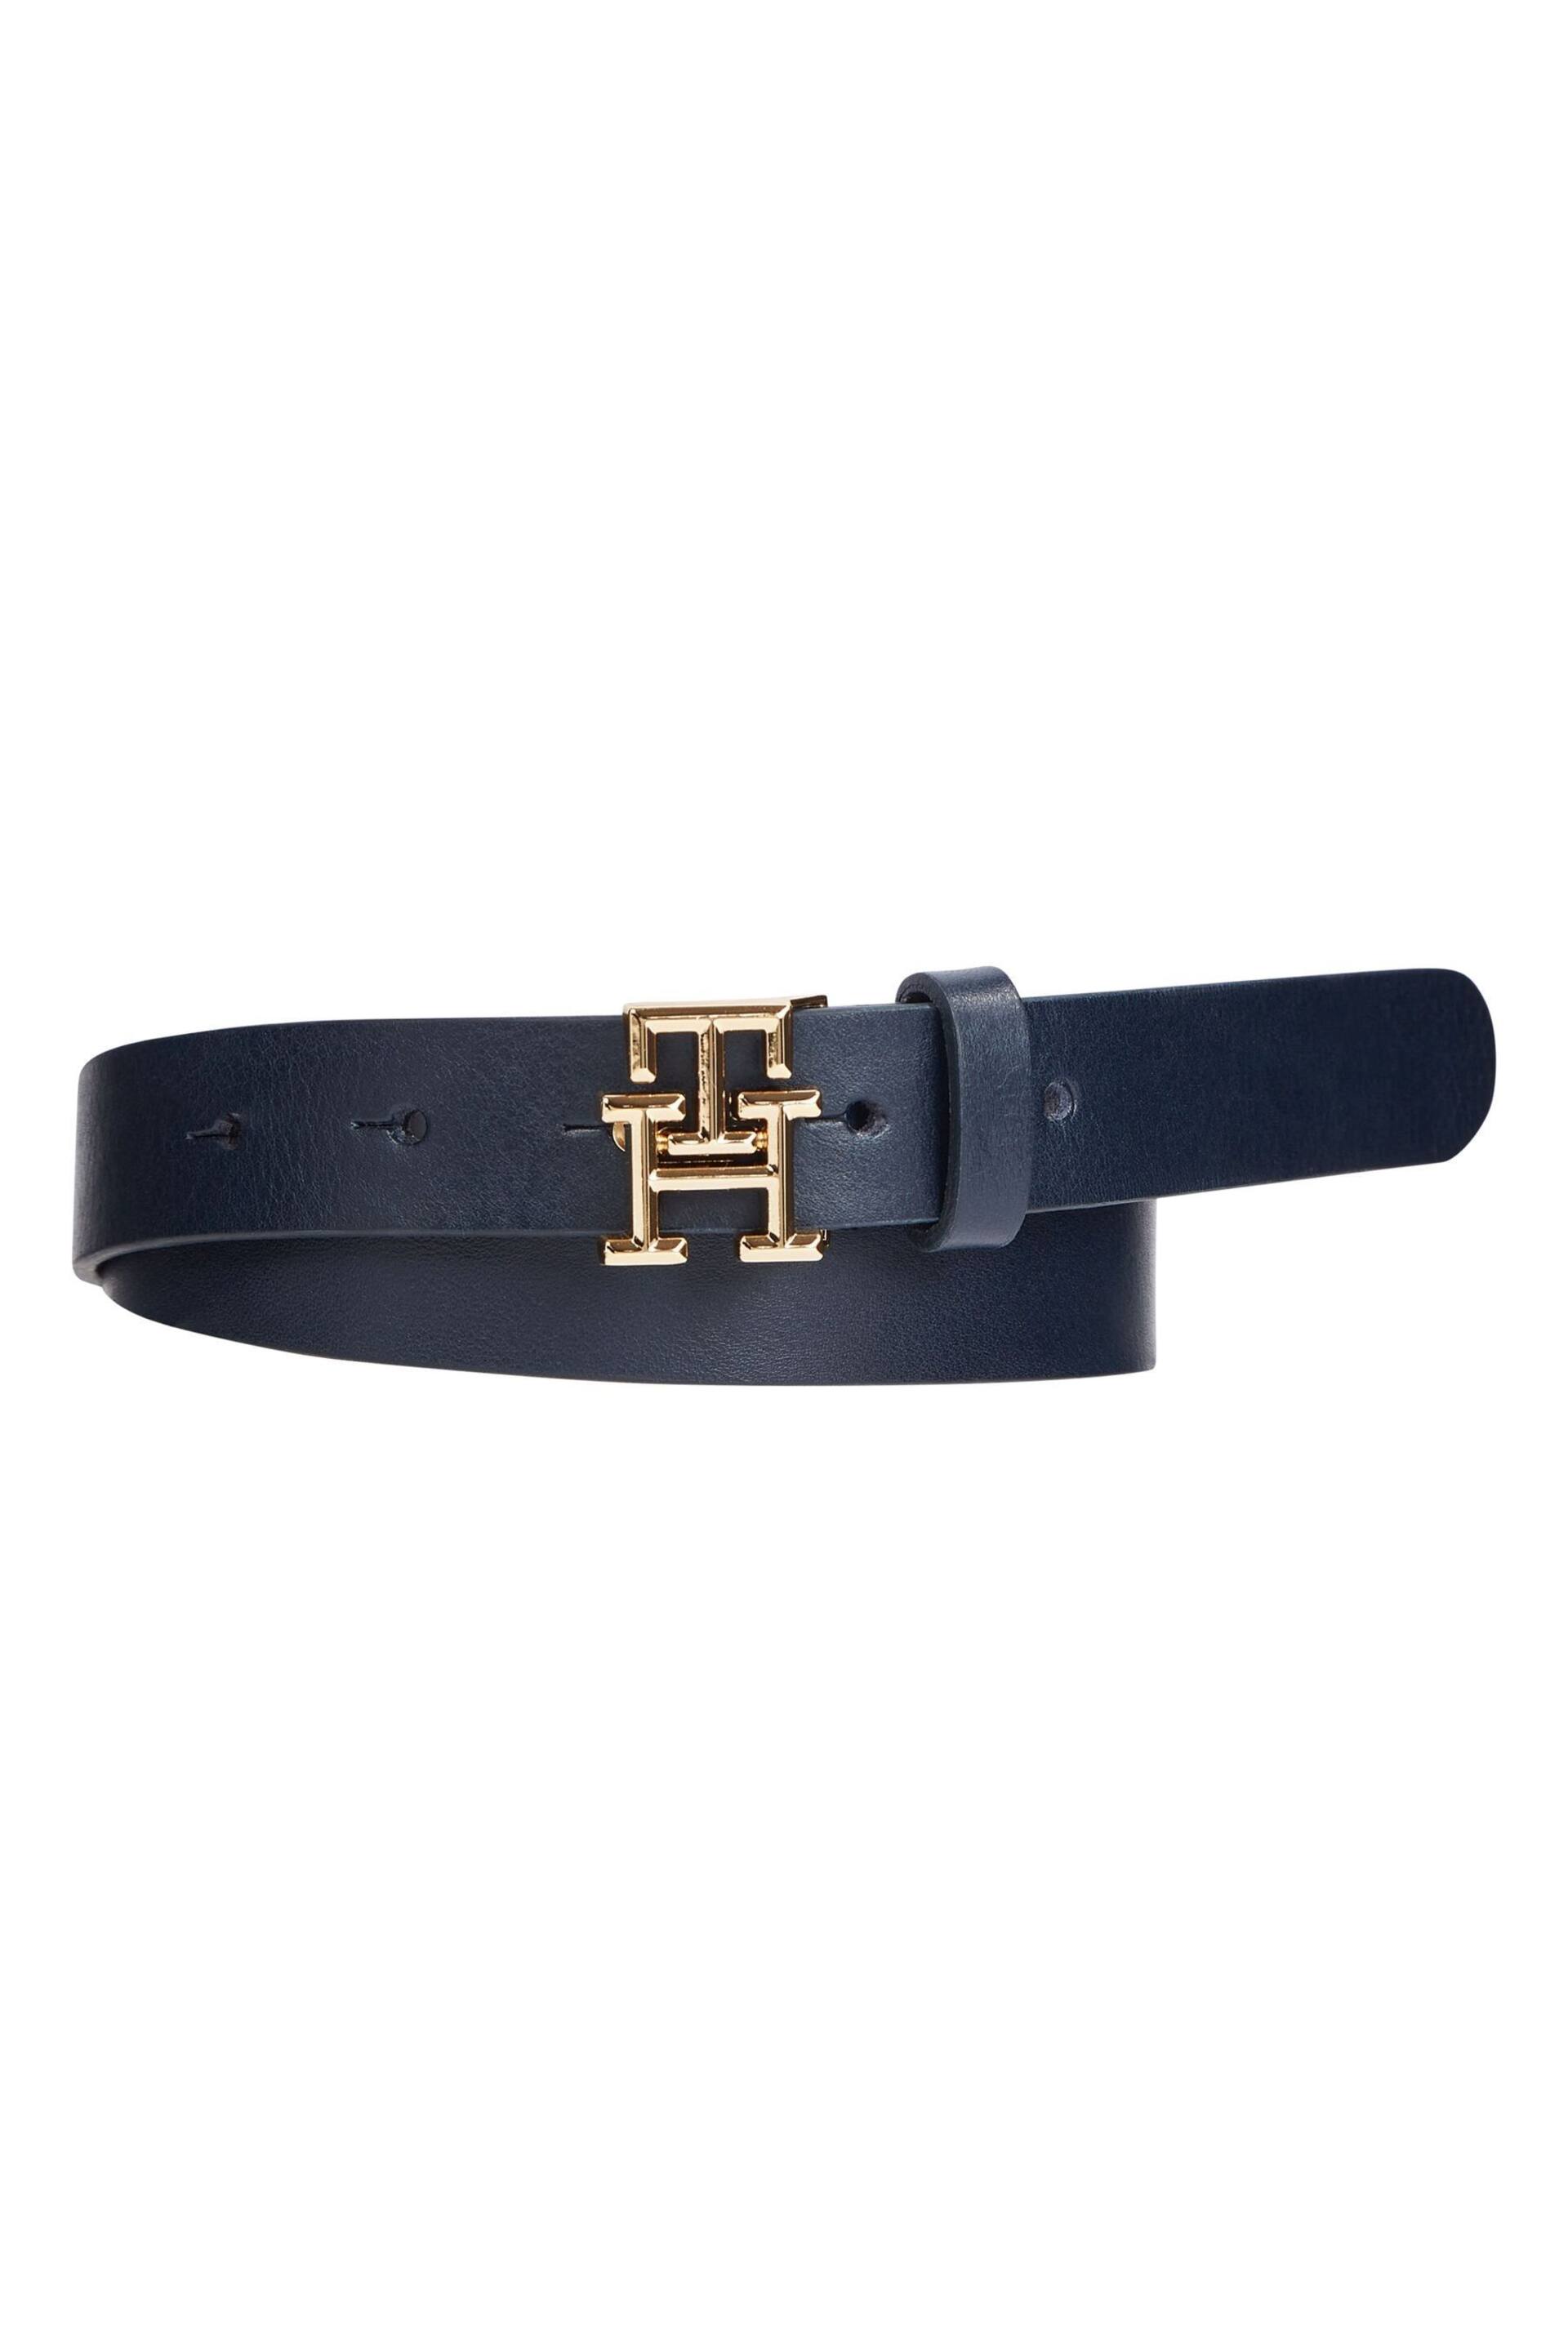 Tommy Hilfiger Blue Logo Belt - Image 1 of 6